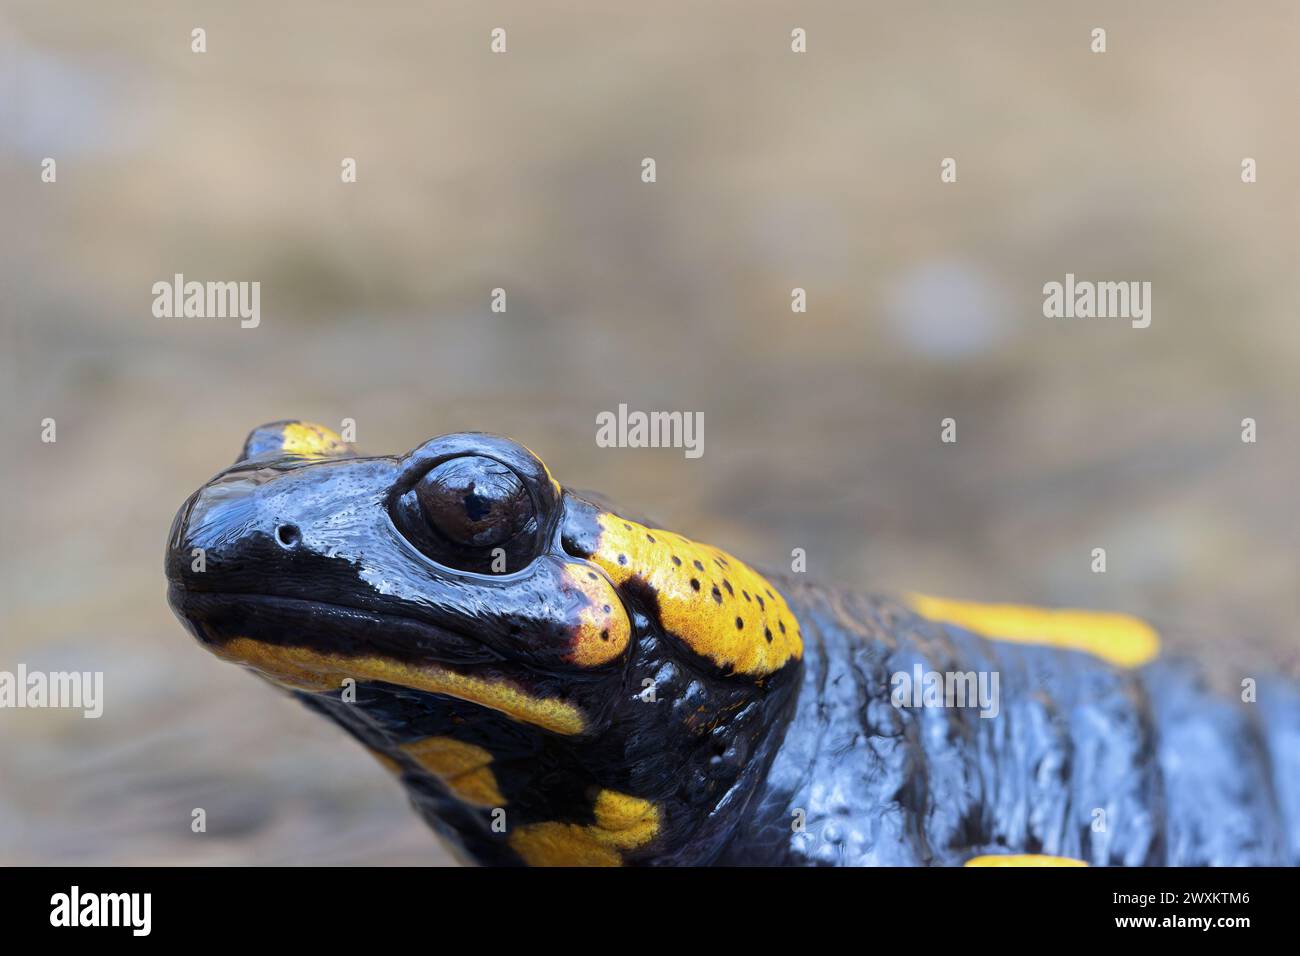 Portrait de salamandre de feu dans un habitat naturel (Salamandra salamandra) Banque D'Images